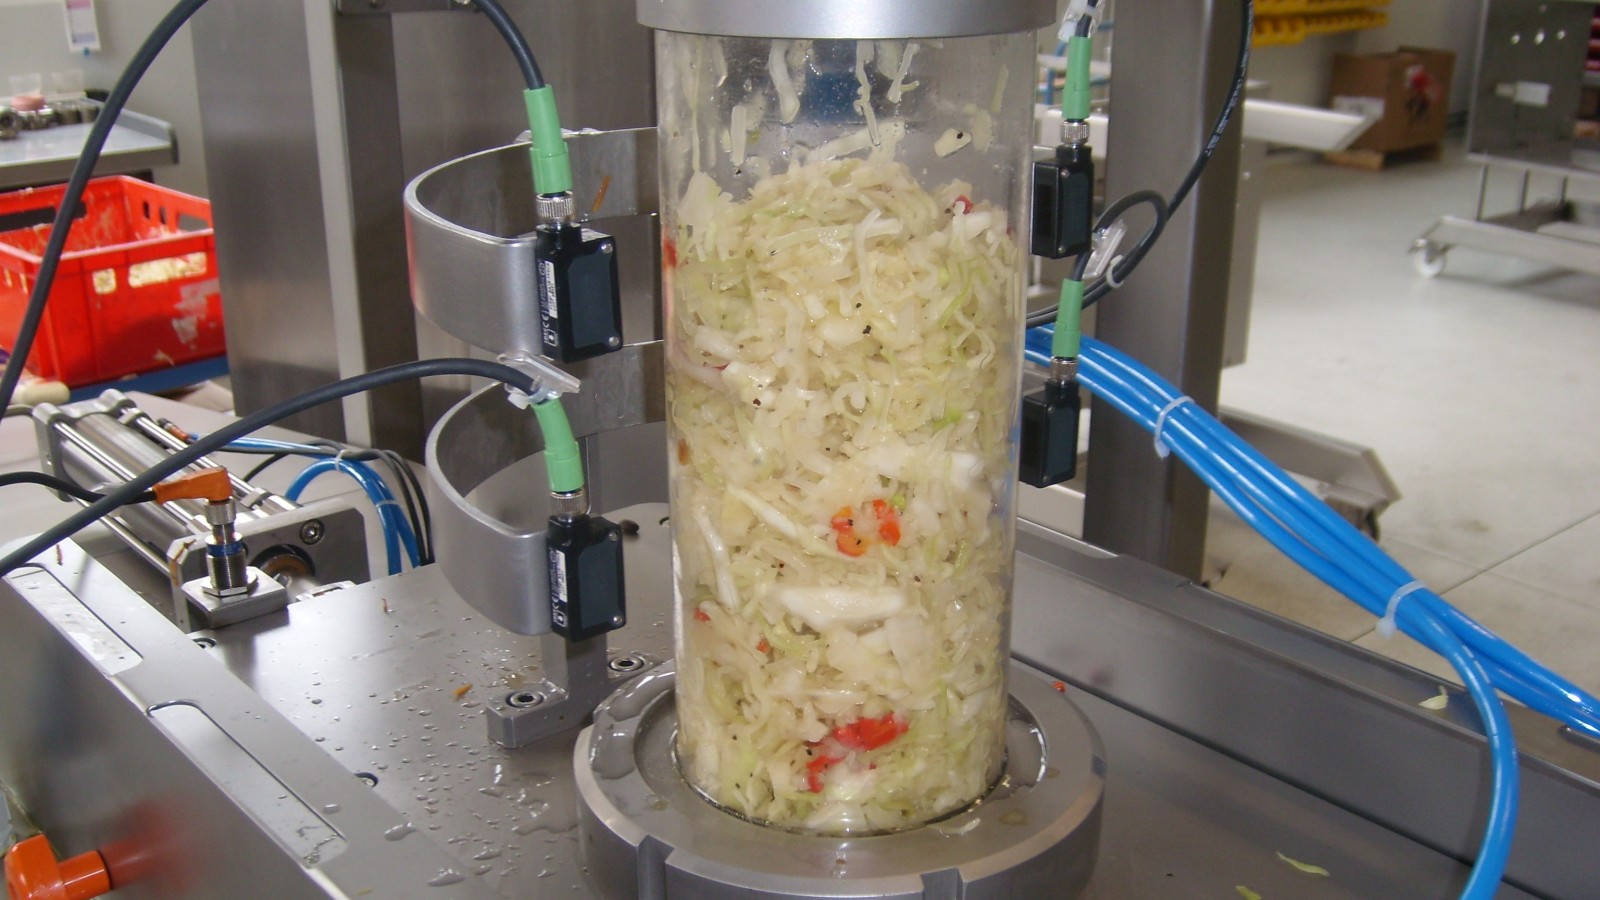 Leonhardt SD til at dosere og fylde salat i bakker og emballage - doseringsmaskine til at dosere fødevarerprodukt i emballage - dosering af kød, og andre fødevarer - kaldes også fyldeanlæg og fyldemaskiner.